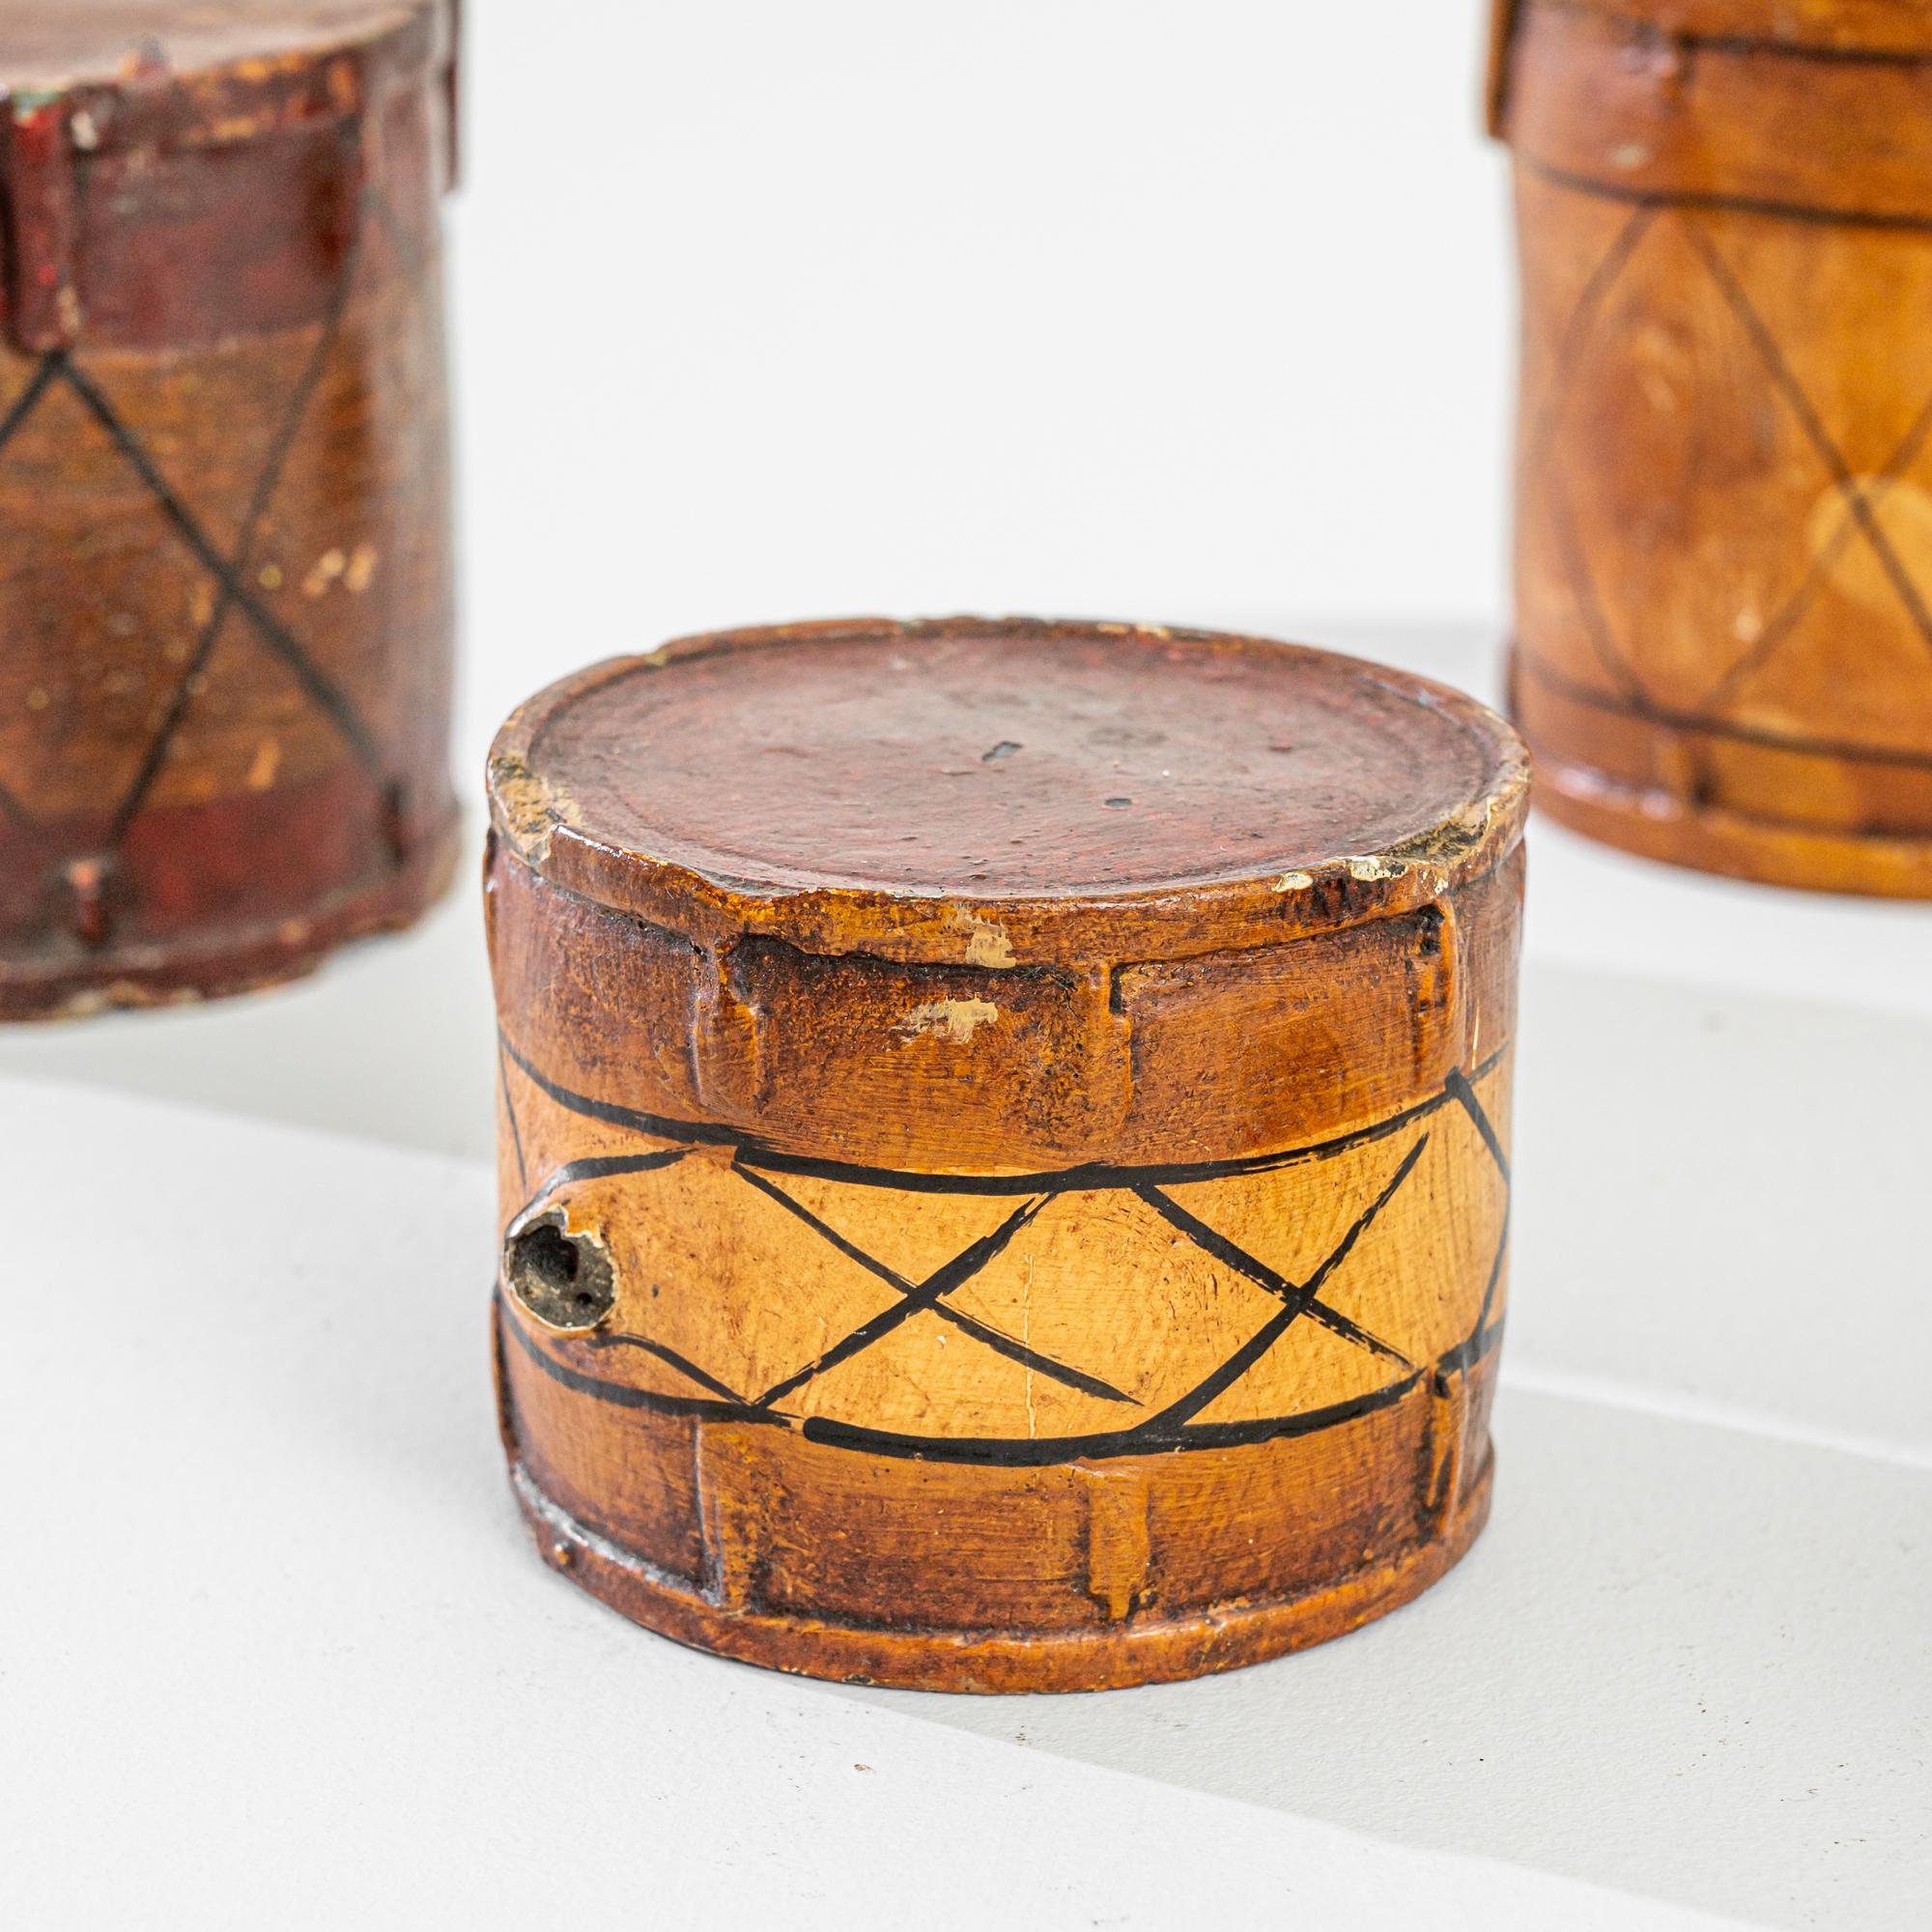 Rehaussez votre décor avec cet ensemble unique de tambours britanniques en terre cuite du XIXe siècle, composé de deux tambours de taille moyenne et de deux tambours plus petits. Fabriqués avec précision, ces tambours présentent des lignes complexes